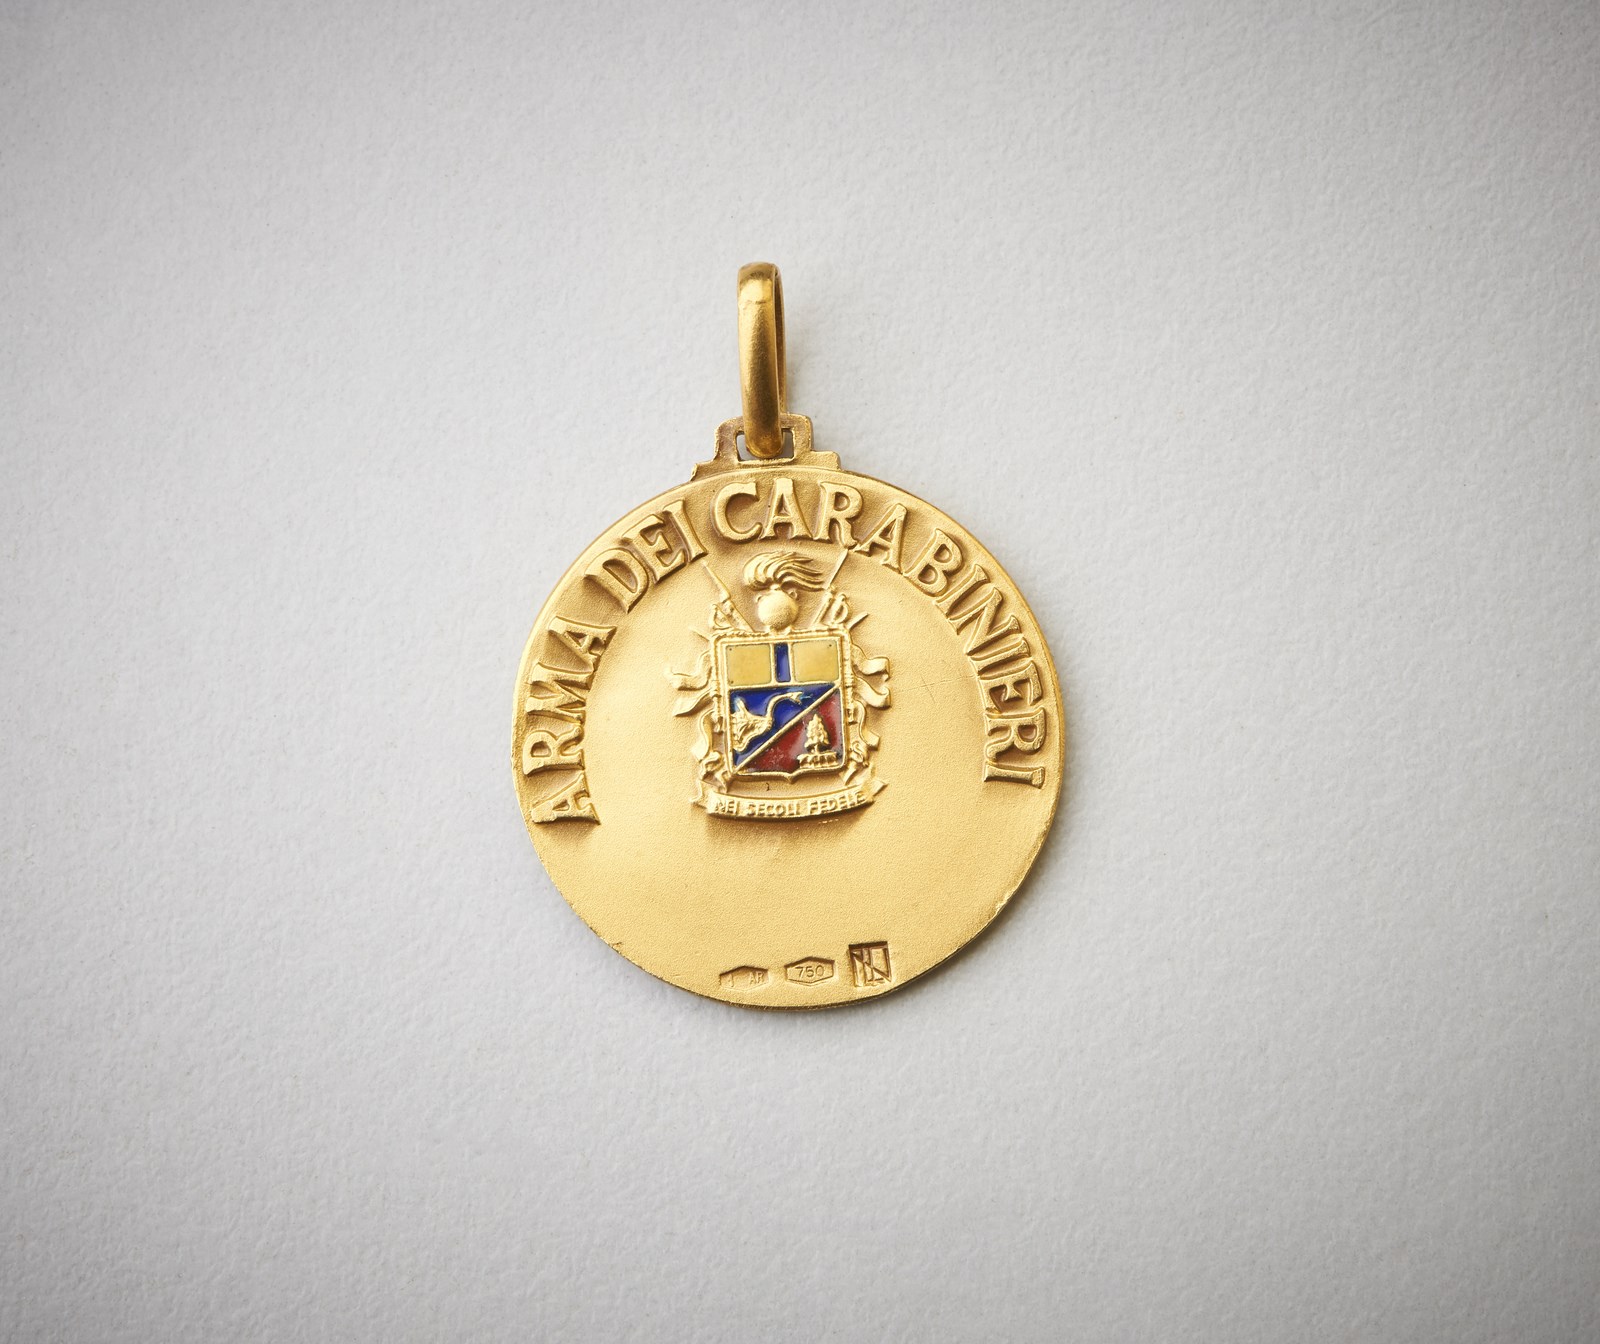 Medaglia in oro 750/1000 arma dei carabinieri. | CAPITOLIUM | ArsValue.com